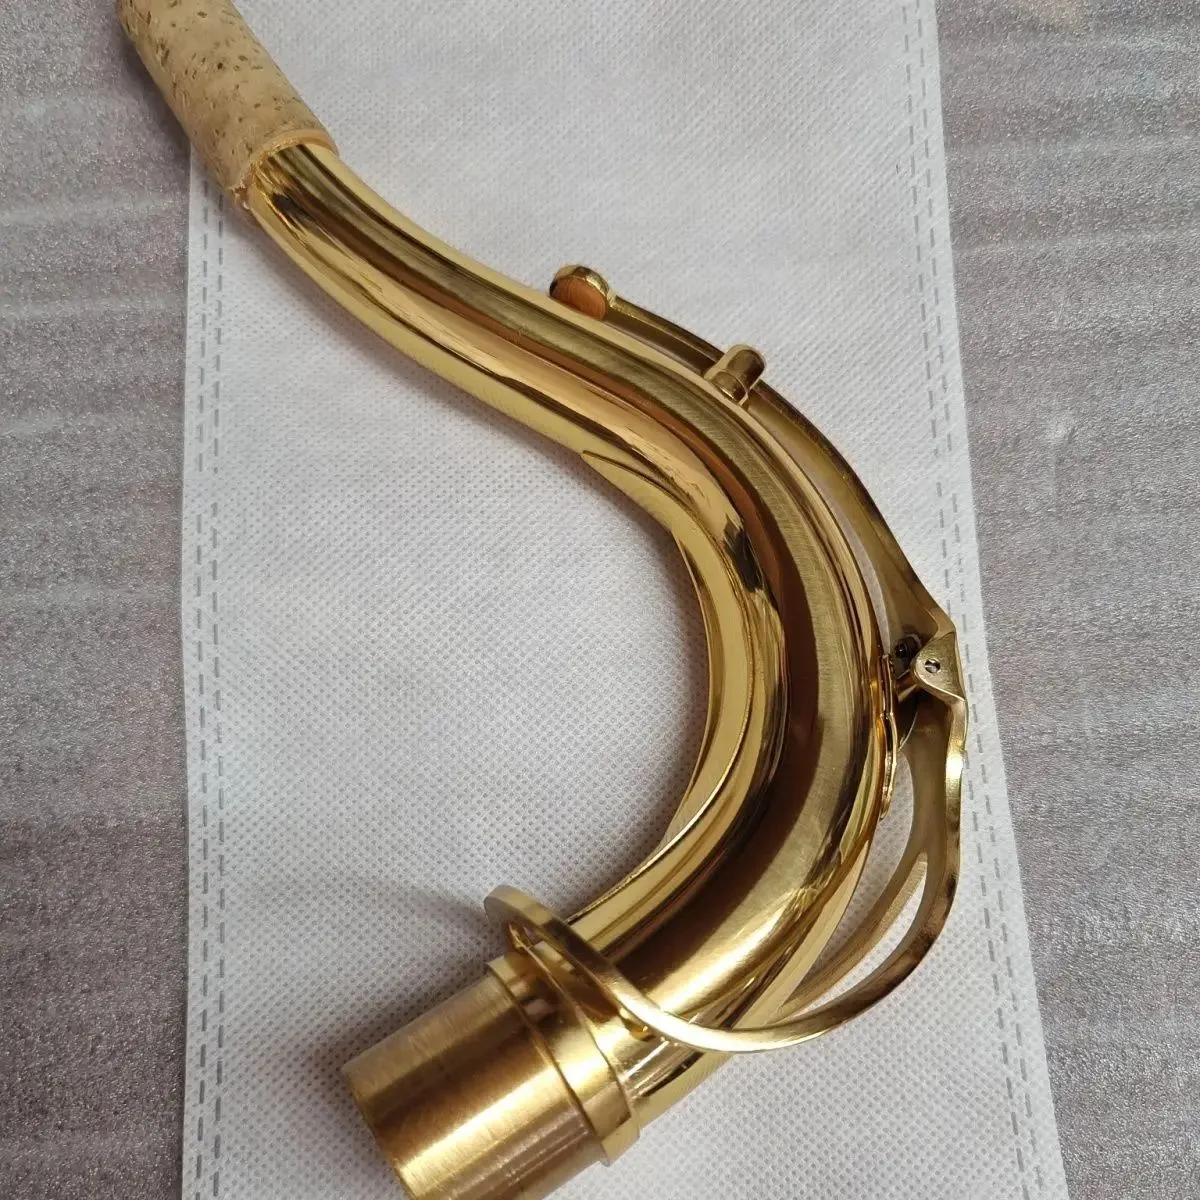 Высококачественный тенор-саксофон B-бемоль с изогнутой шеей, латунный позолоченный гриф, аксессуары для саксофона профессионального уровня